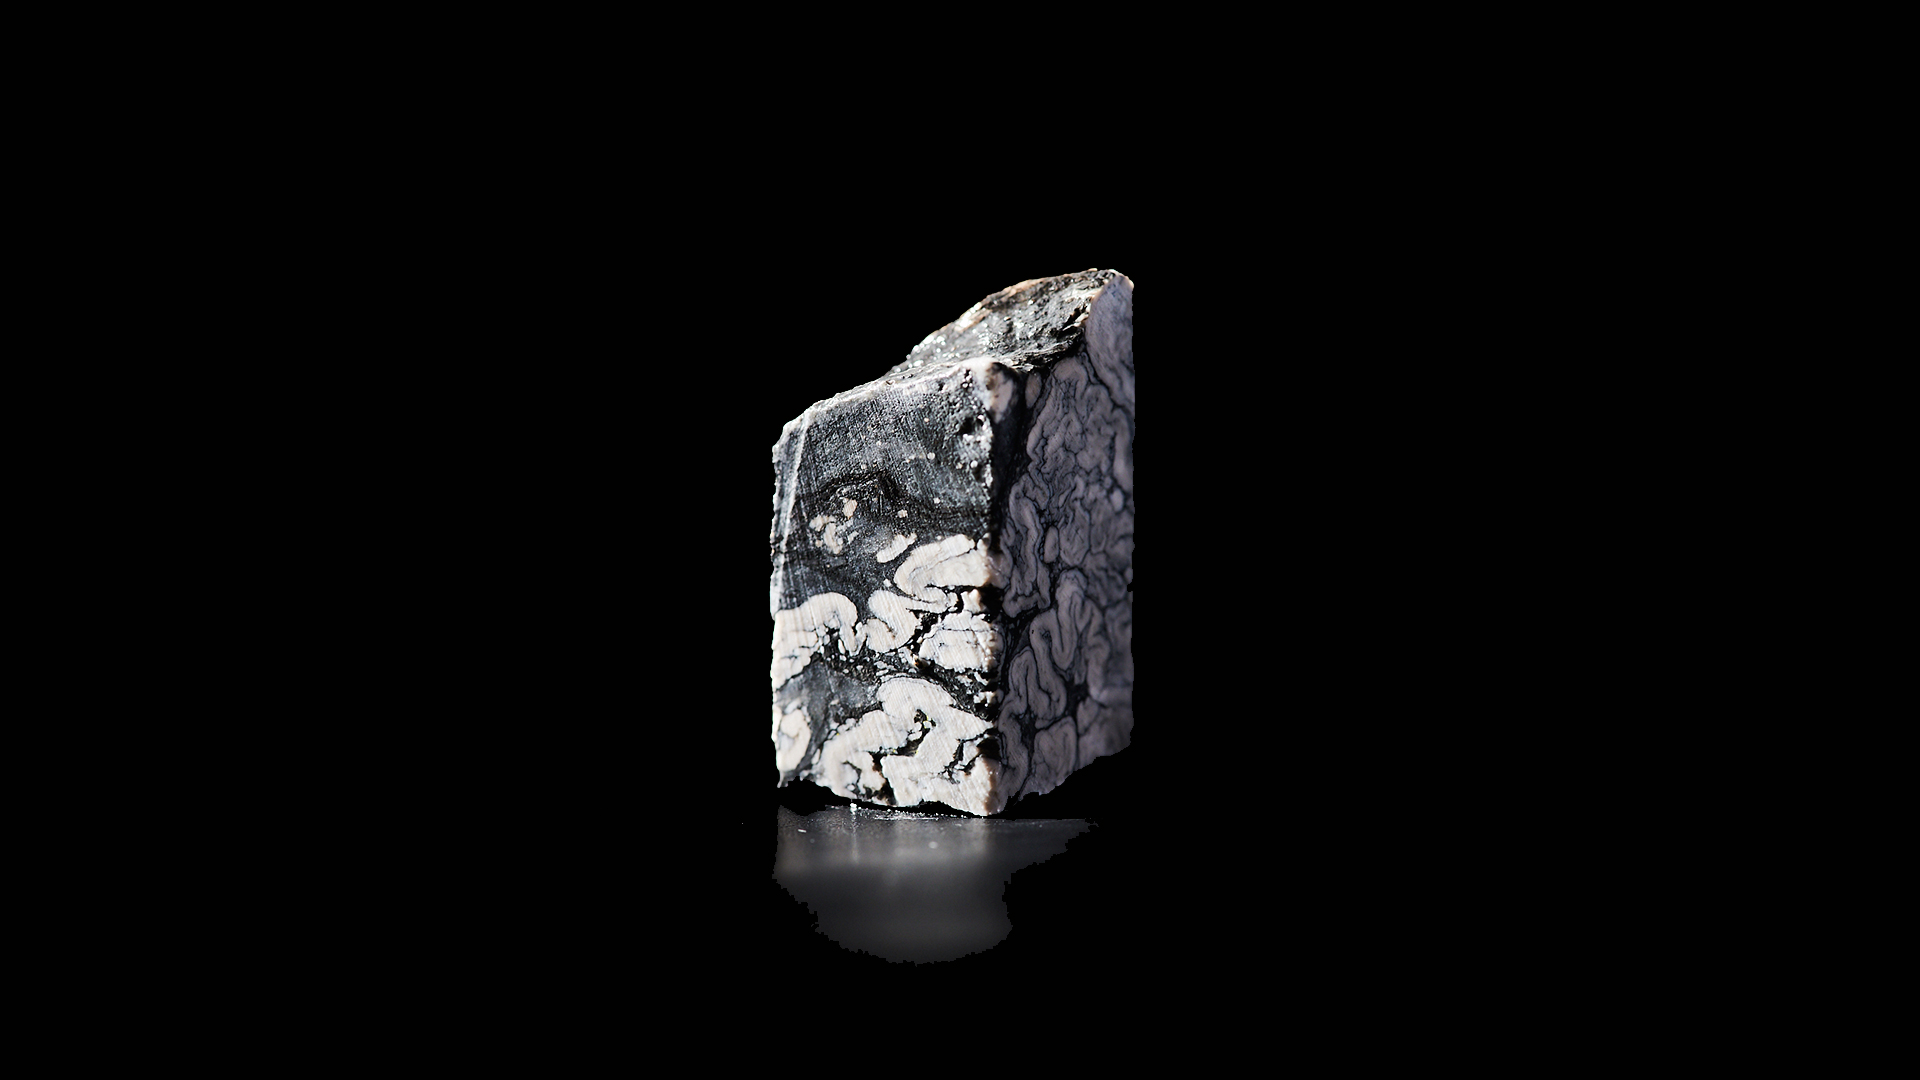 The new mineral, jadarite